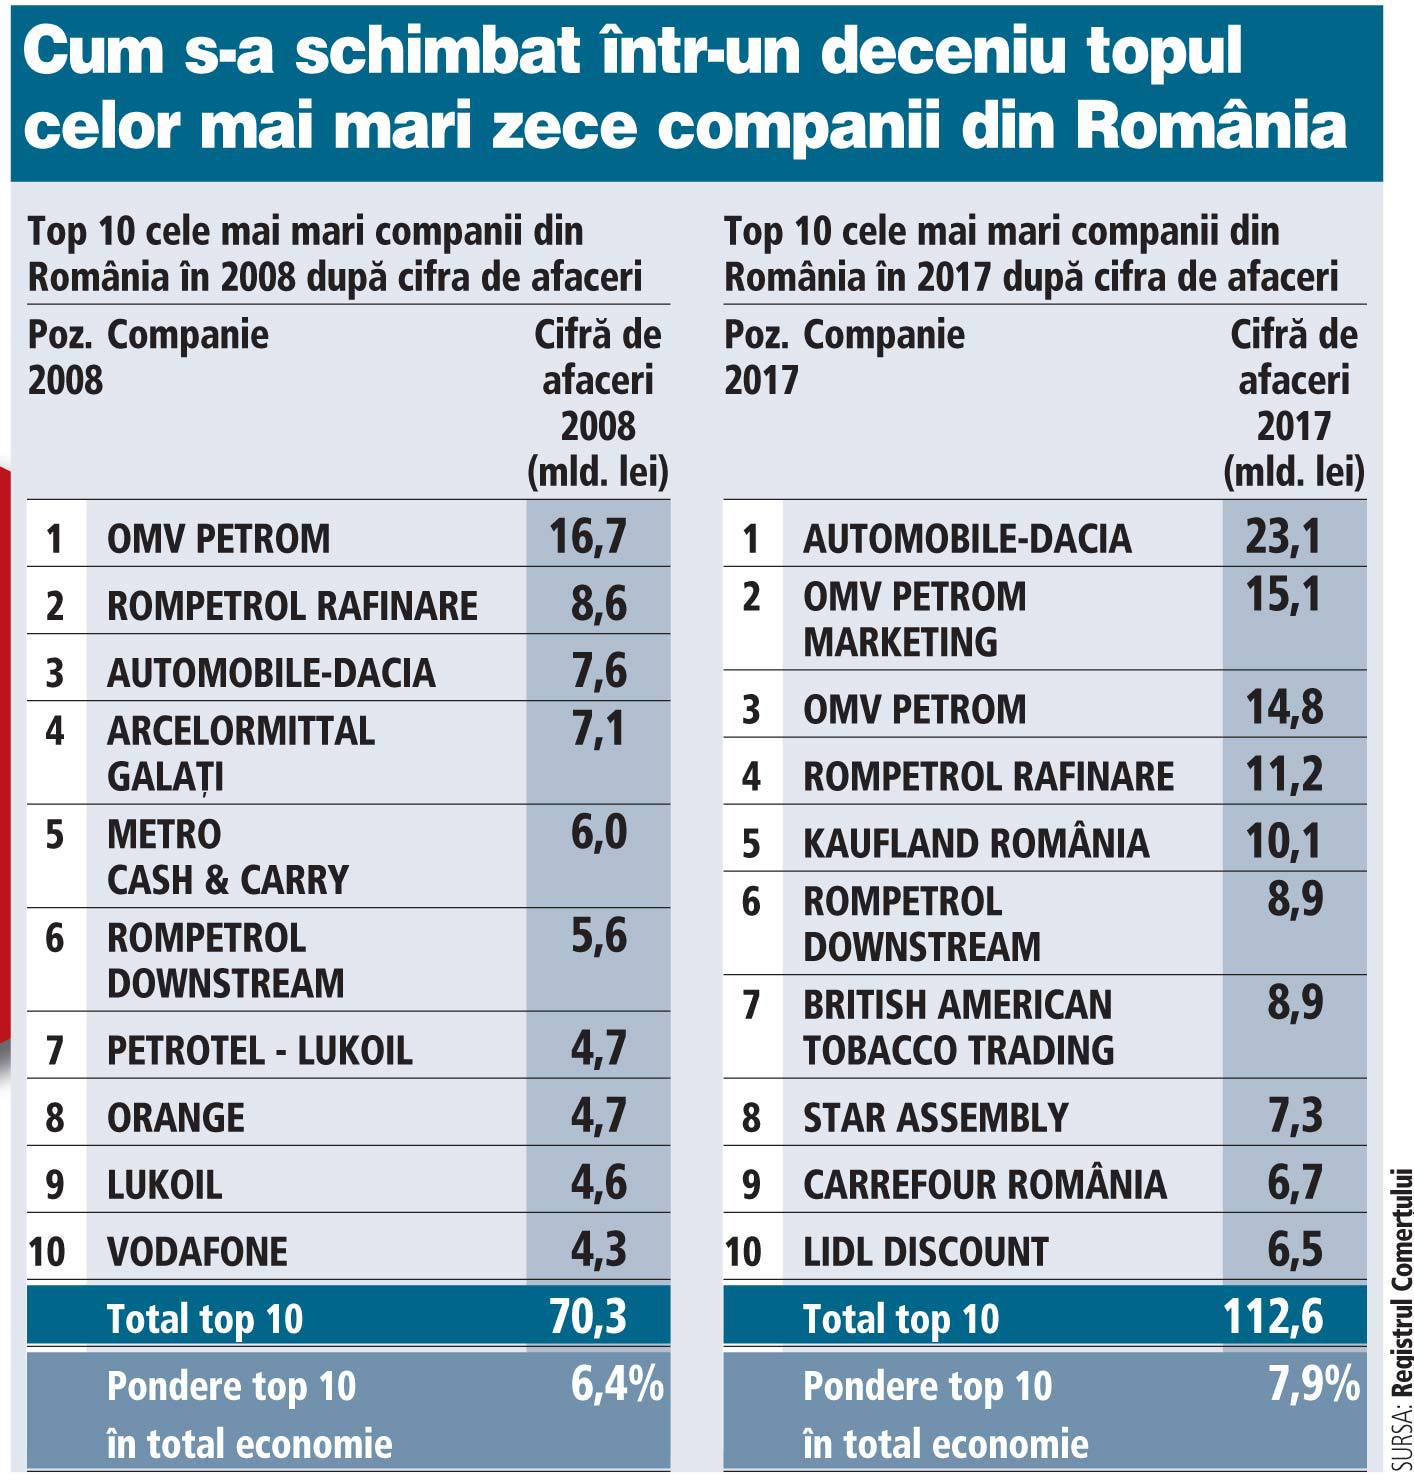 Urmează conferinţa ZF Liderii economiei locale - Top 1.000 cele mai mari companii din România. Un deceniu peste top zece: Dacia, Petrom şi Rompetrol, singurii lideri din 2008 care au rămas în top zece şi în 2017